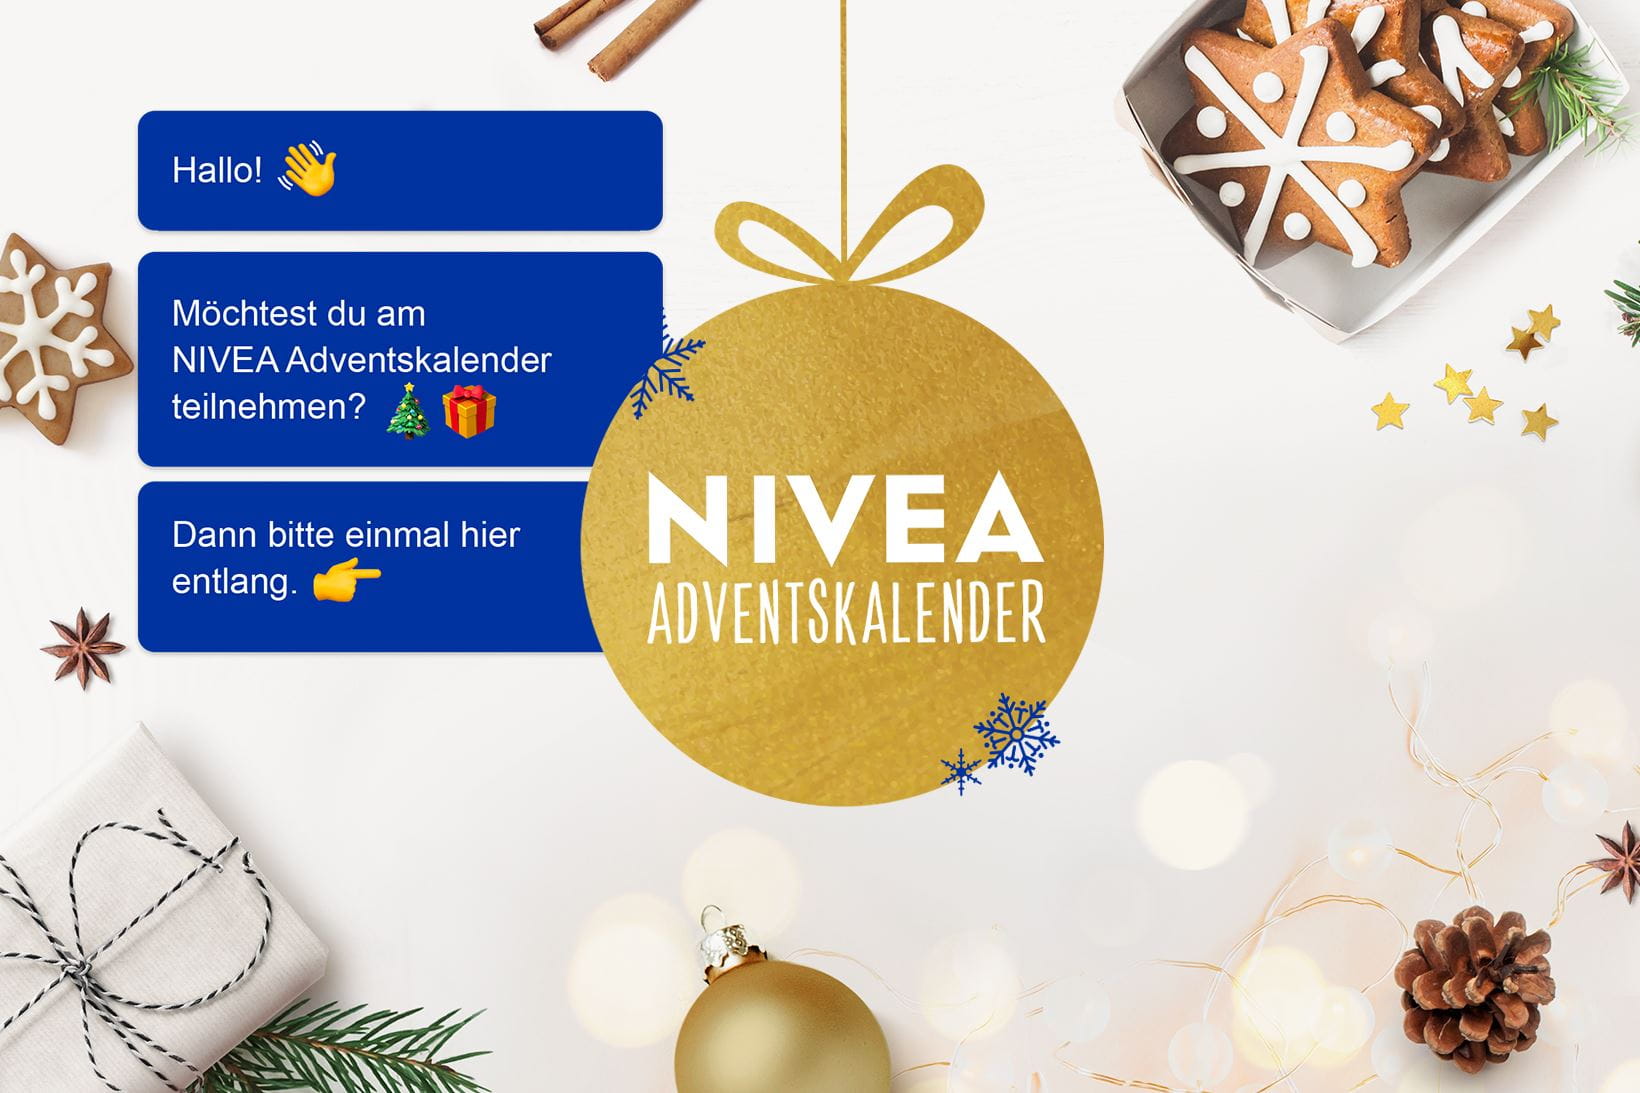 Der NIVEA Adventskalender 2021 auf der Gewinnspielseite